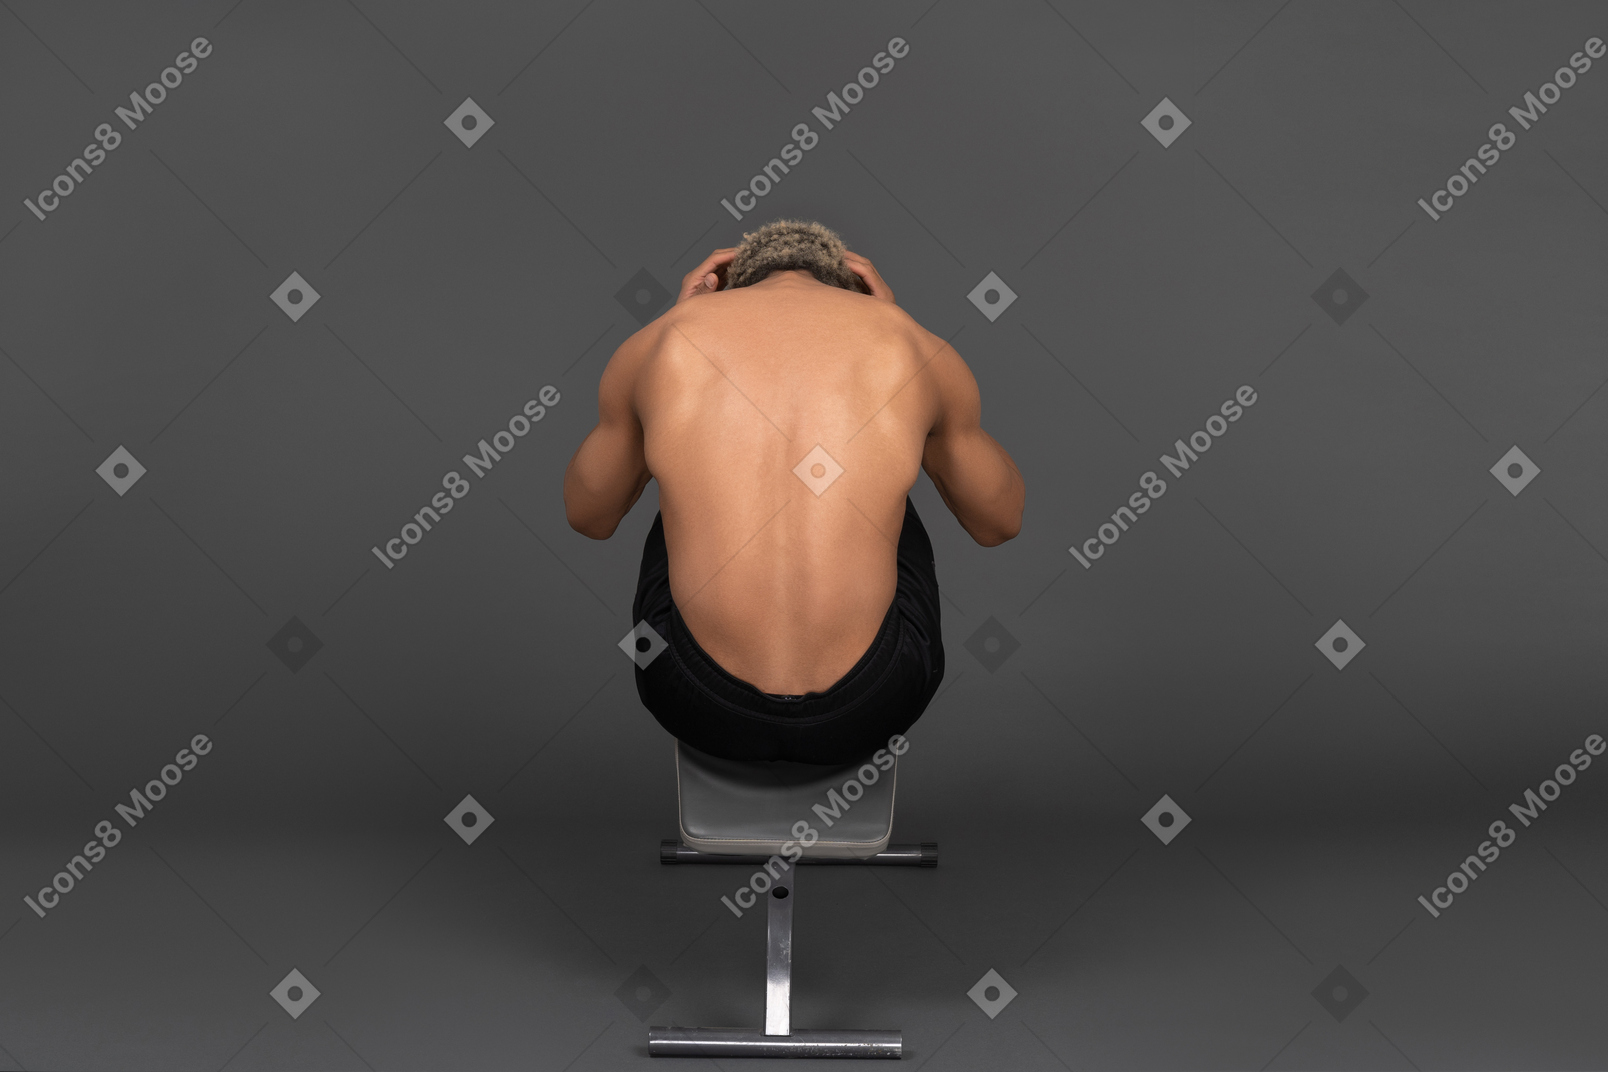 Vista traseira de um homem afro sem camisa fazendo abdominais